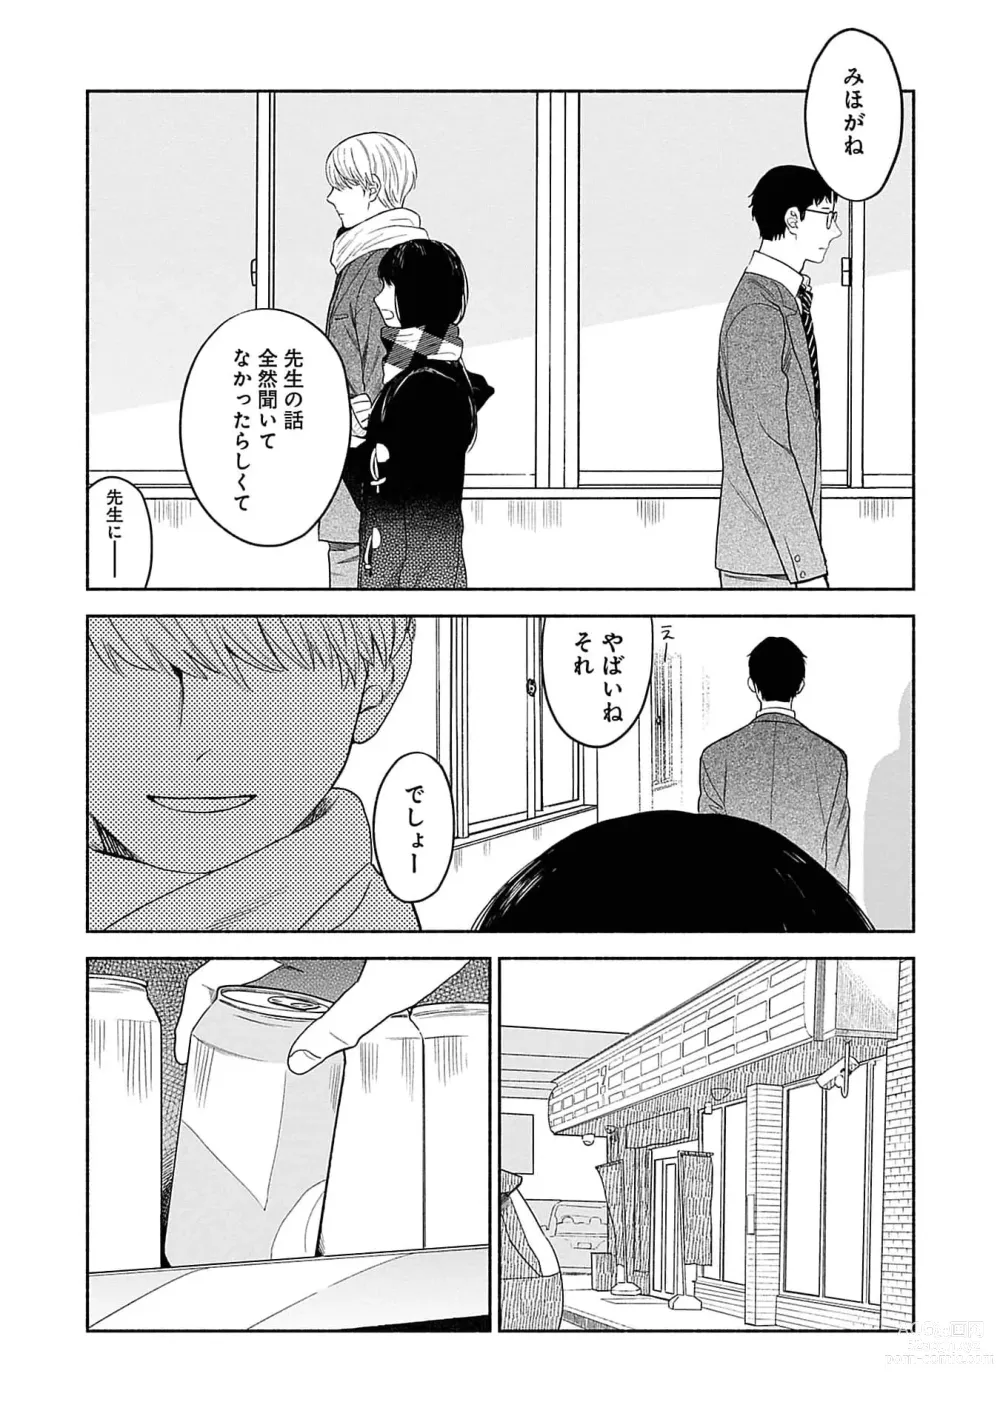 Page 166 of manga Yoru no Kyoudai